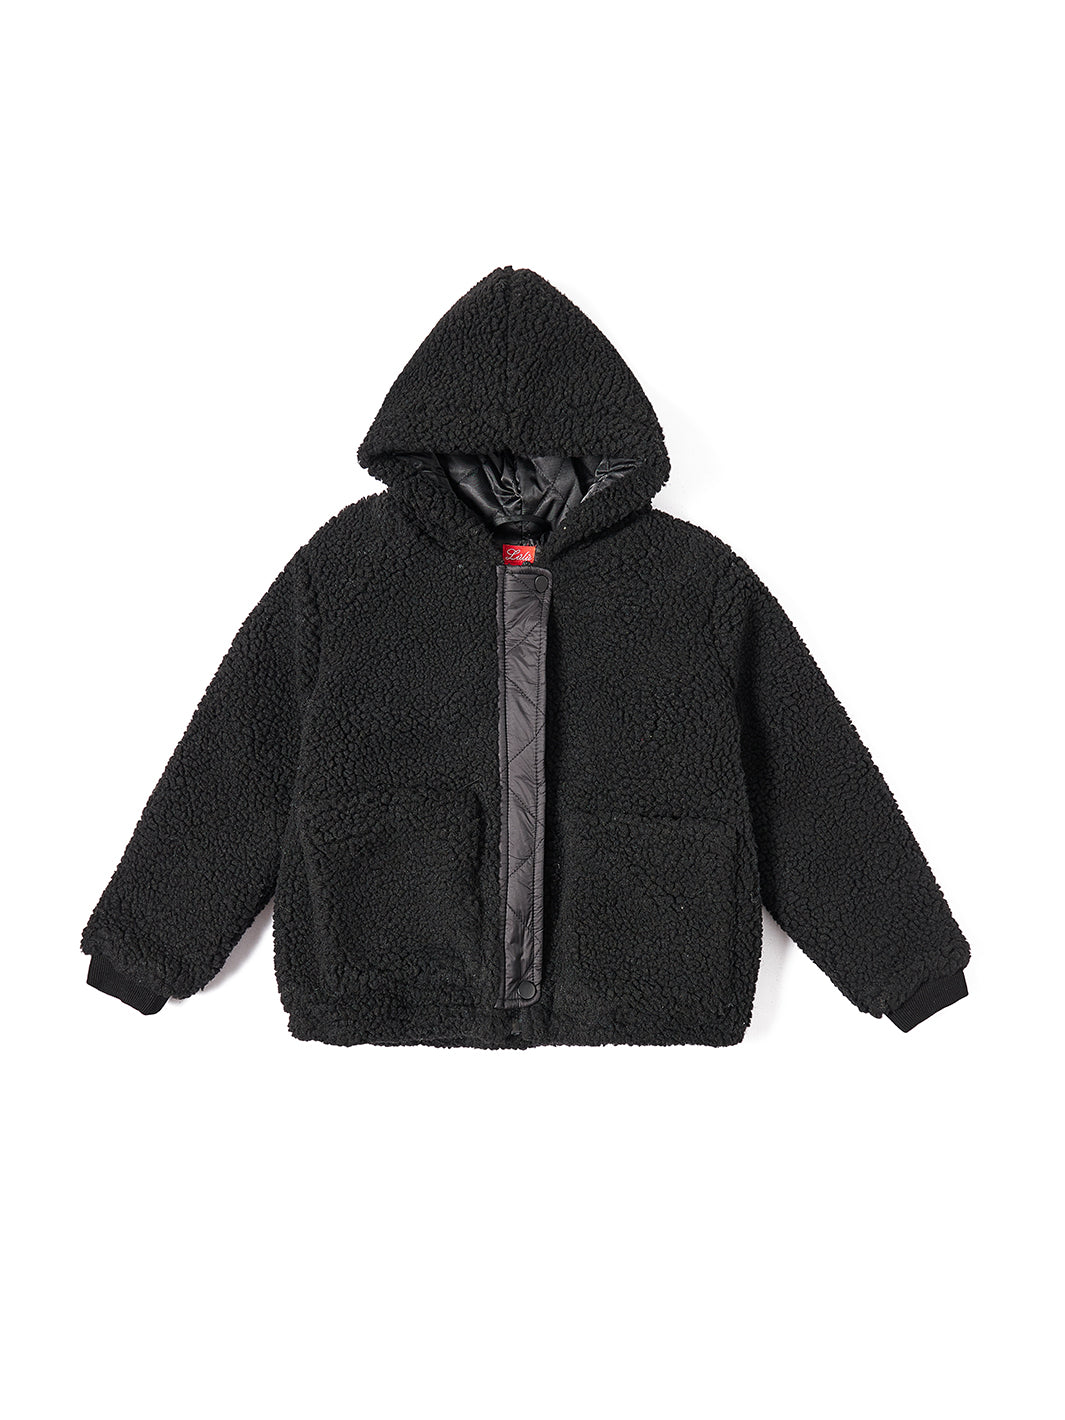 Hood Jacket - Black